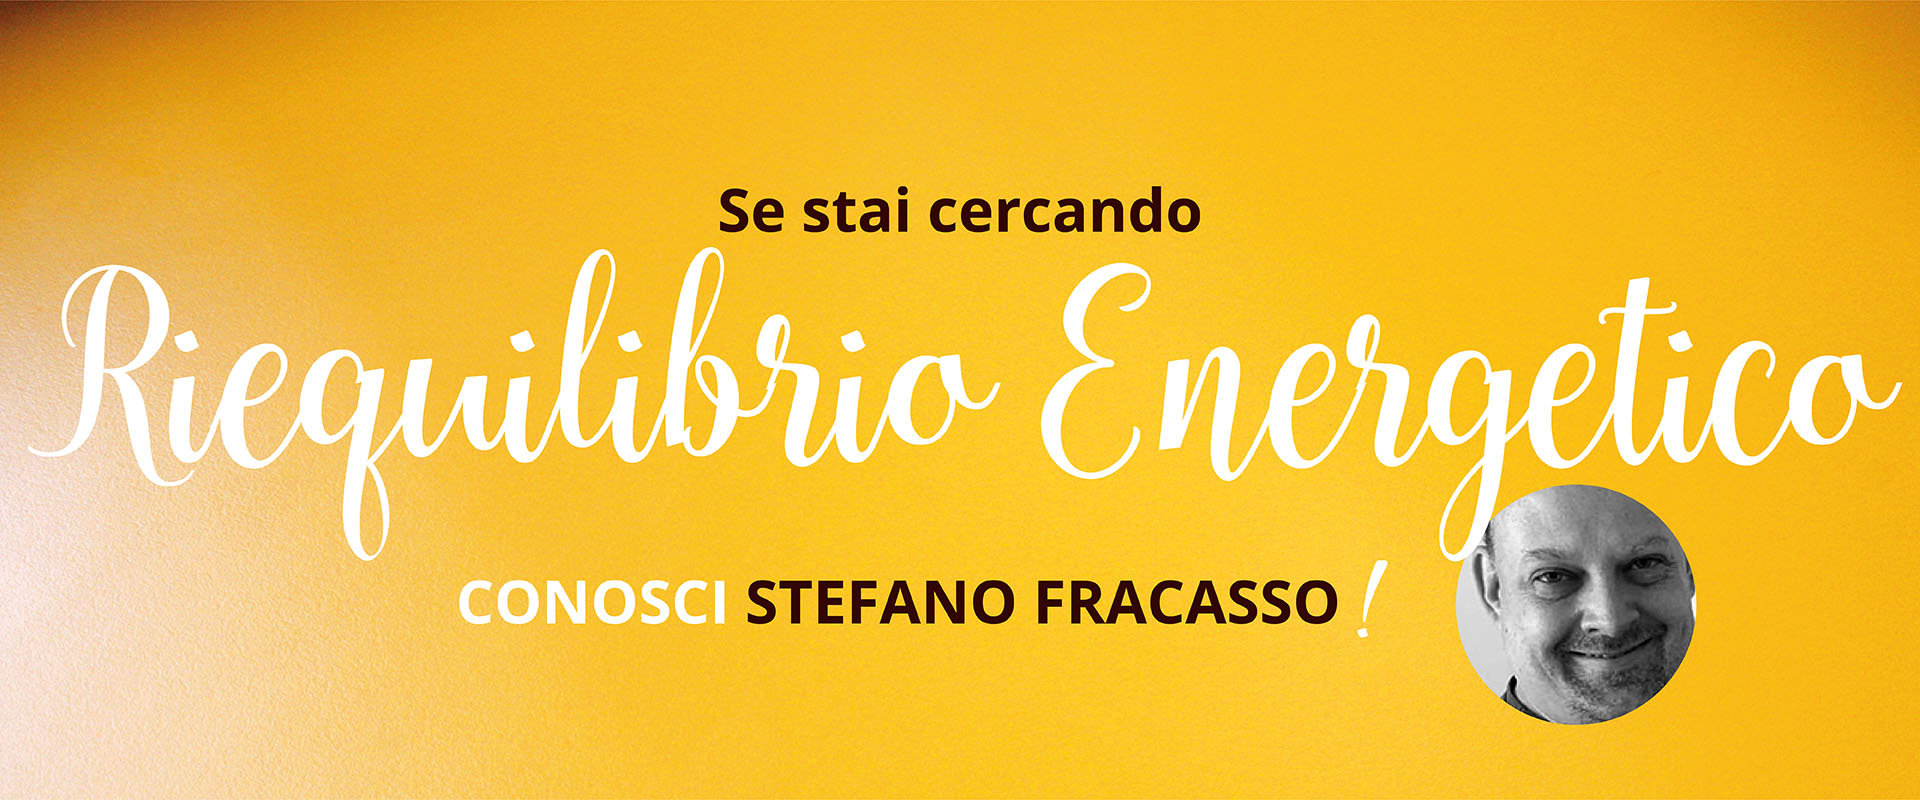 Spazio per me, Stefano Fracasso, Riequilibrio Energetico.